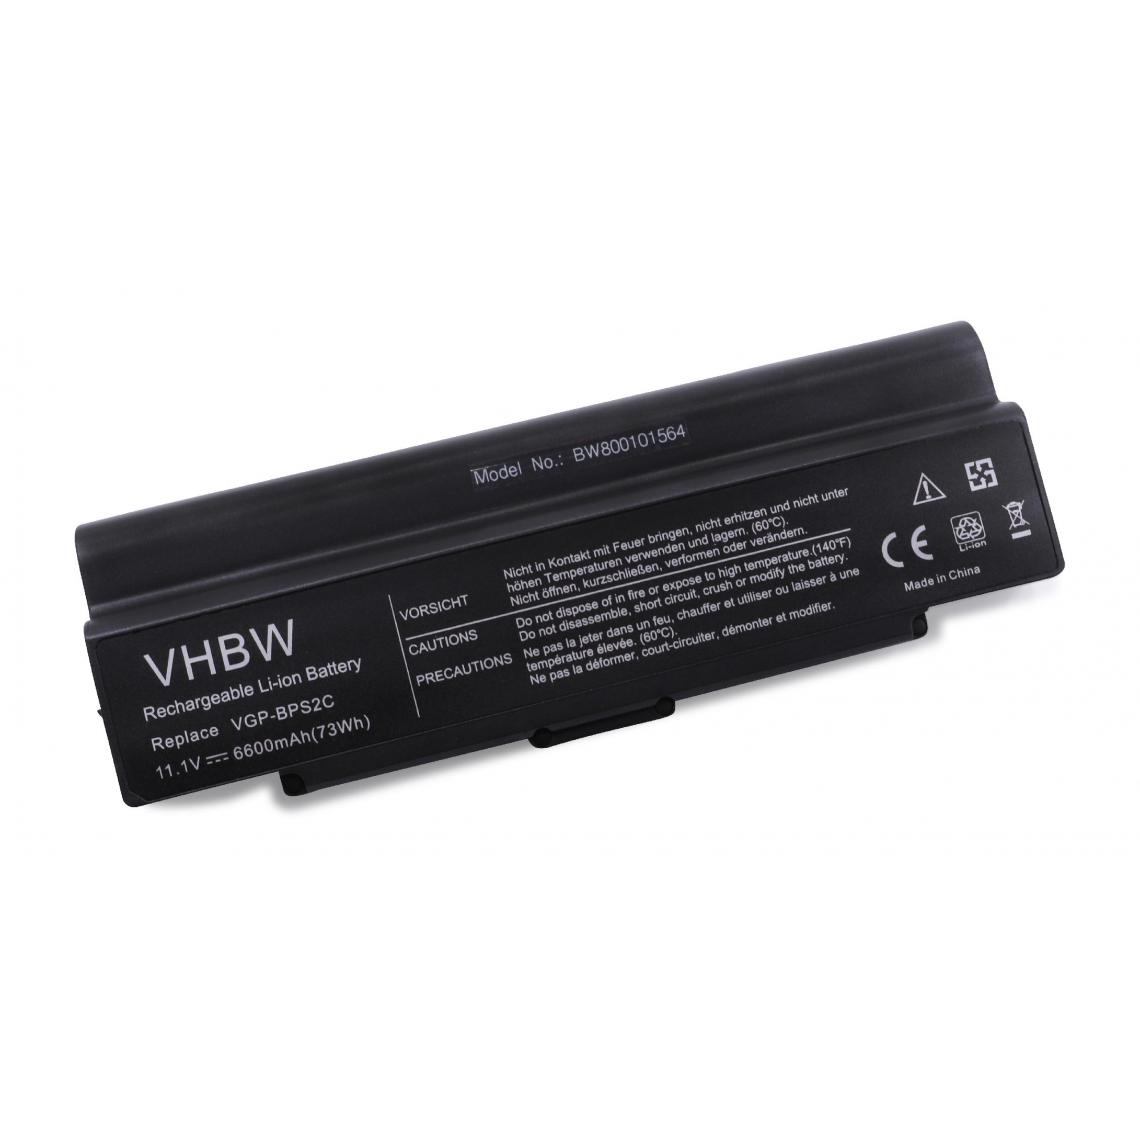 Vhbw - vhbw batterie Li-Ion 6600mAh (11.1V) pour Notebook ordinateur Sony VAIO VGN-S47SP, VGN-S480, VGN-S480P, VGN-S48CP/B, VGN-S48GP,VGN-S48GP/B et VGP-BPS2 - Batterie PC Portable